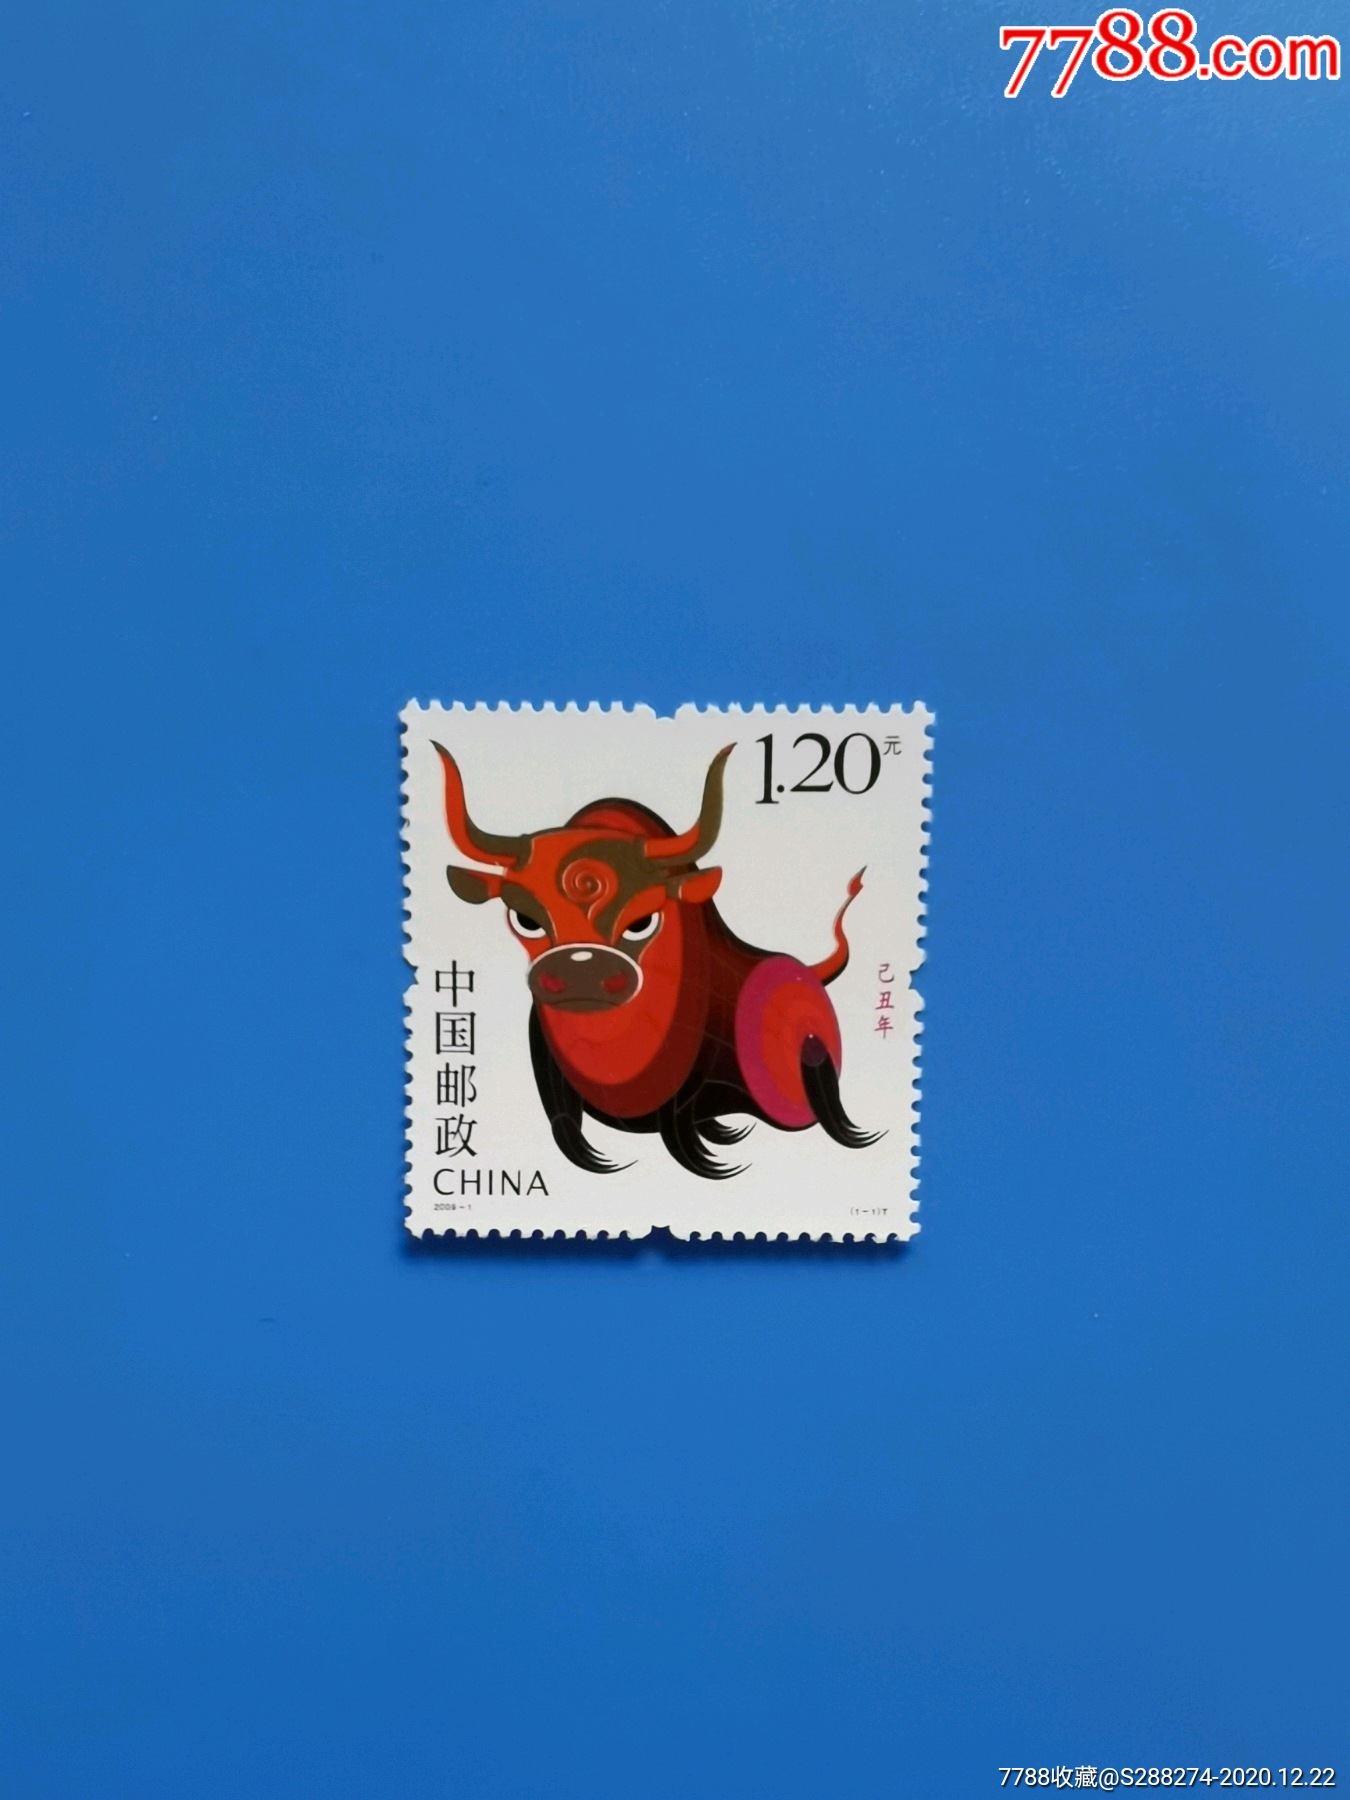 牛的邮票图片大全集图片